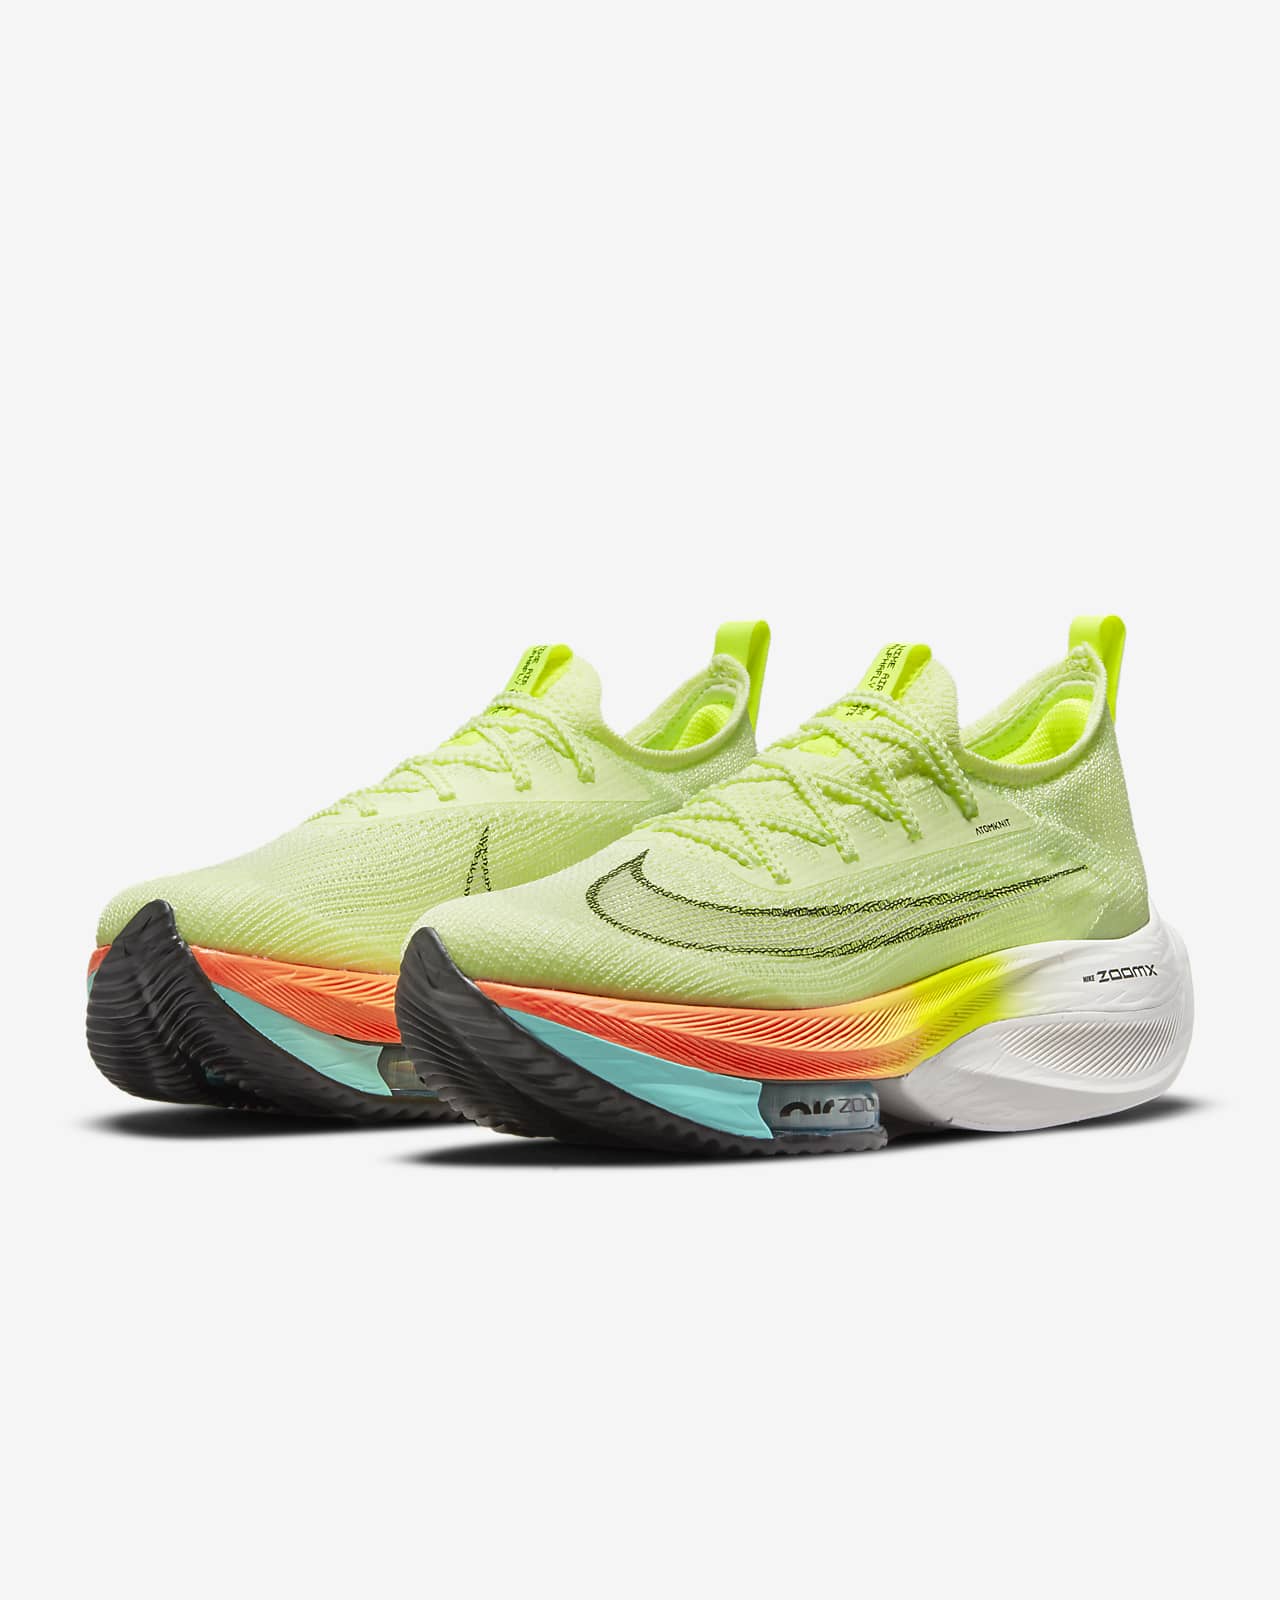 يمكن إعادة تدوير الورق المستخدم إلى: Nike Air Zoom Alphafly NEXT% Flyknit Women's Road Racing Shoes يمكن إعادة تدوير الورق المستخدم إلى: